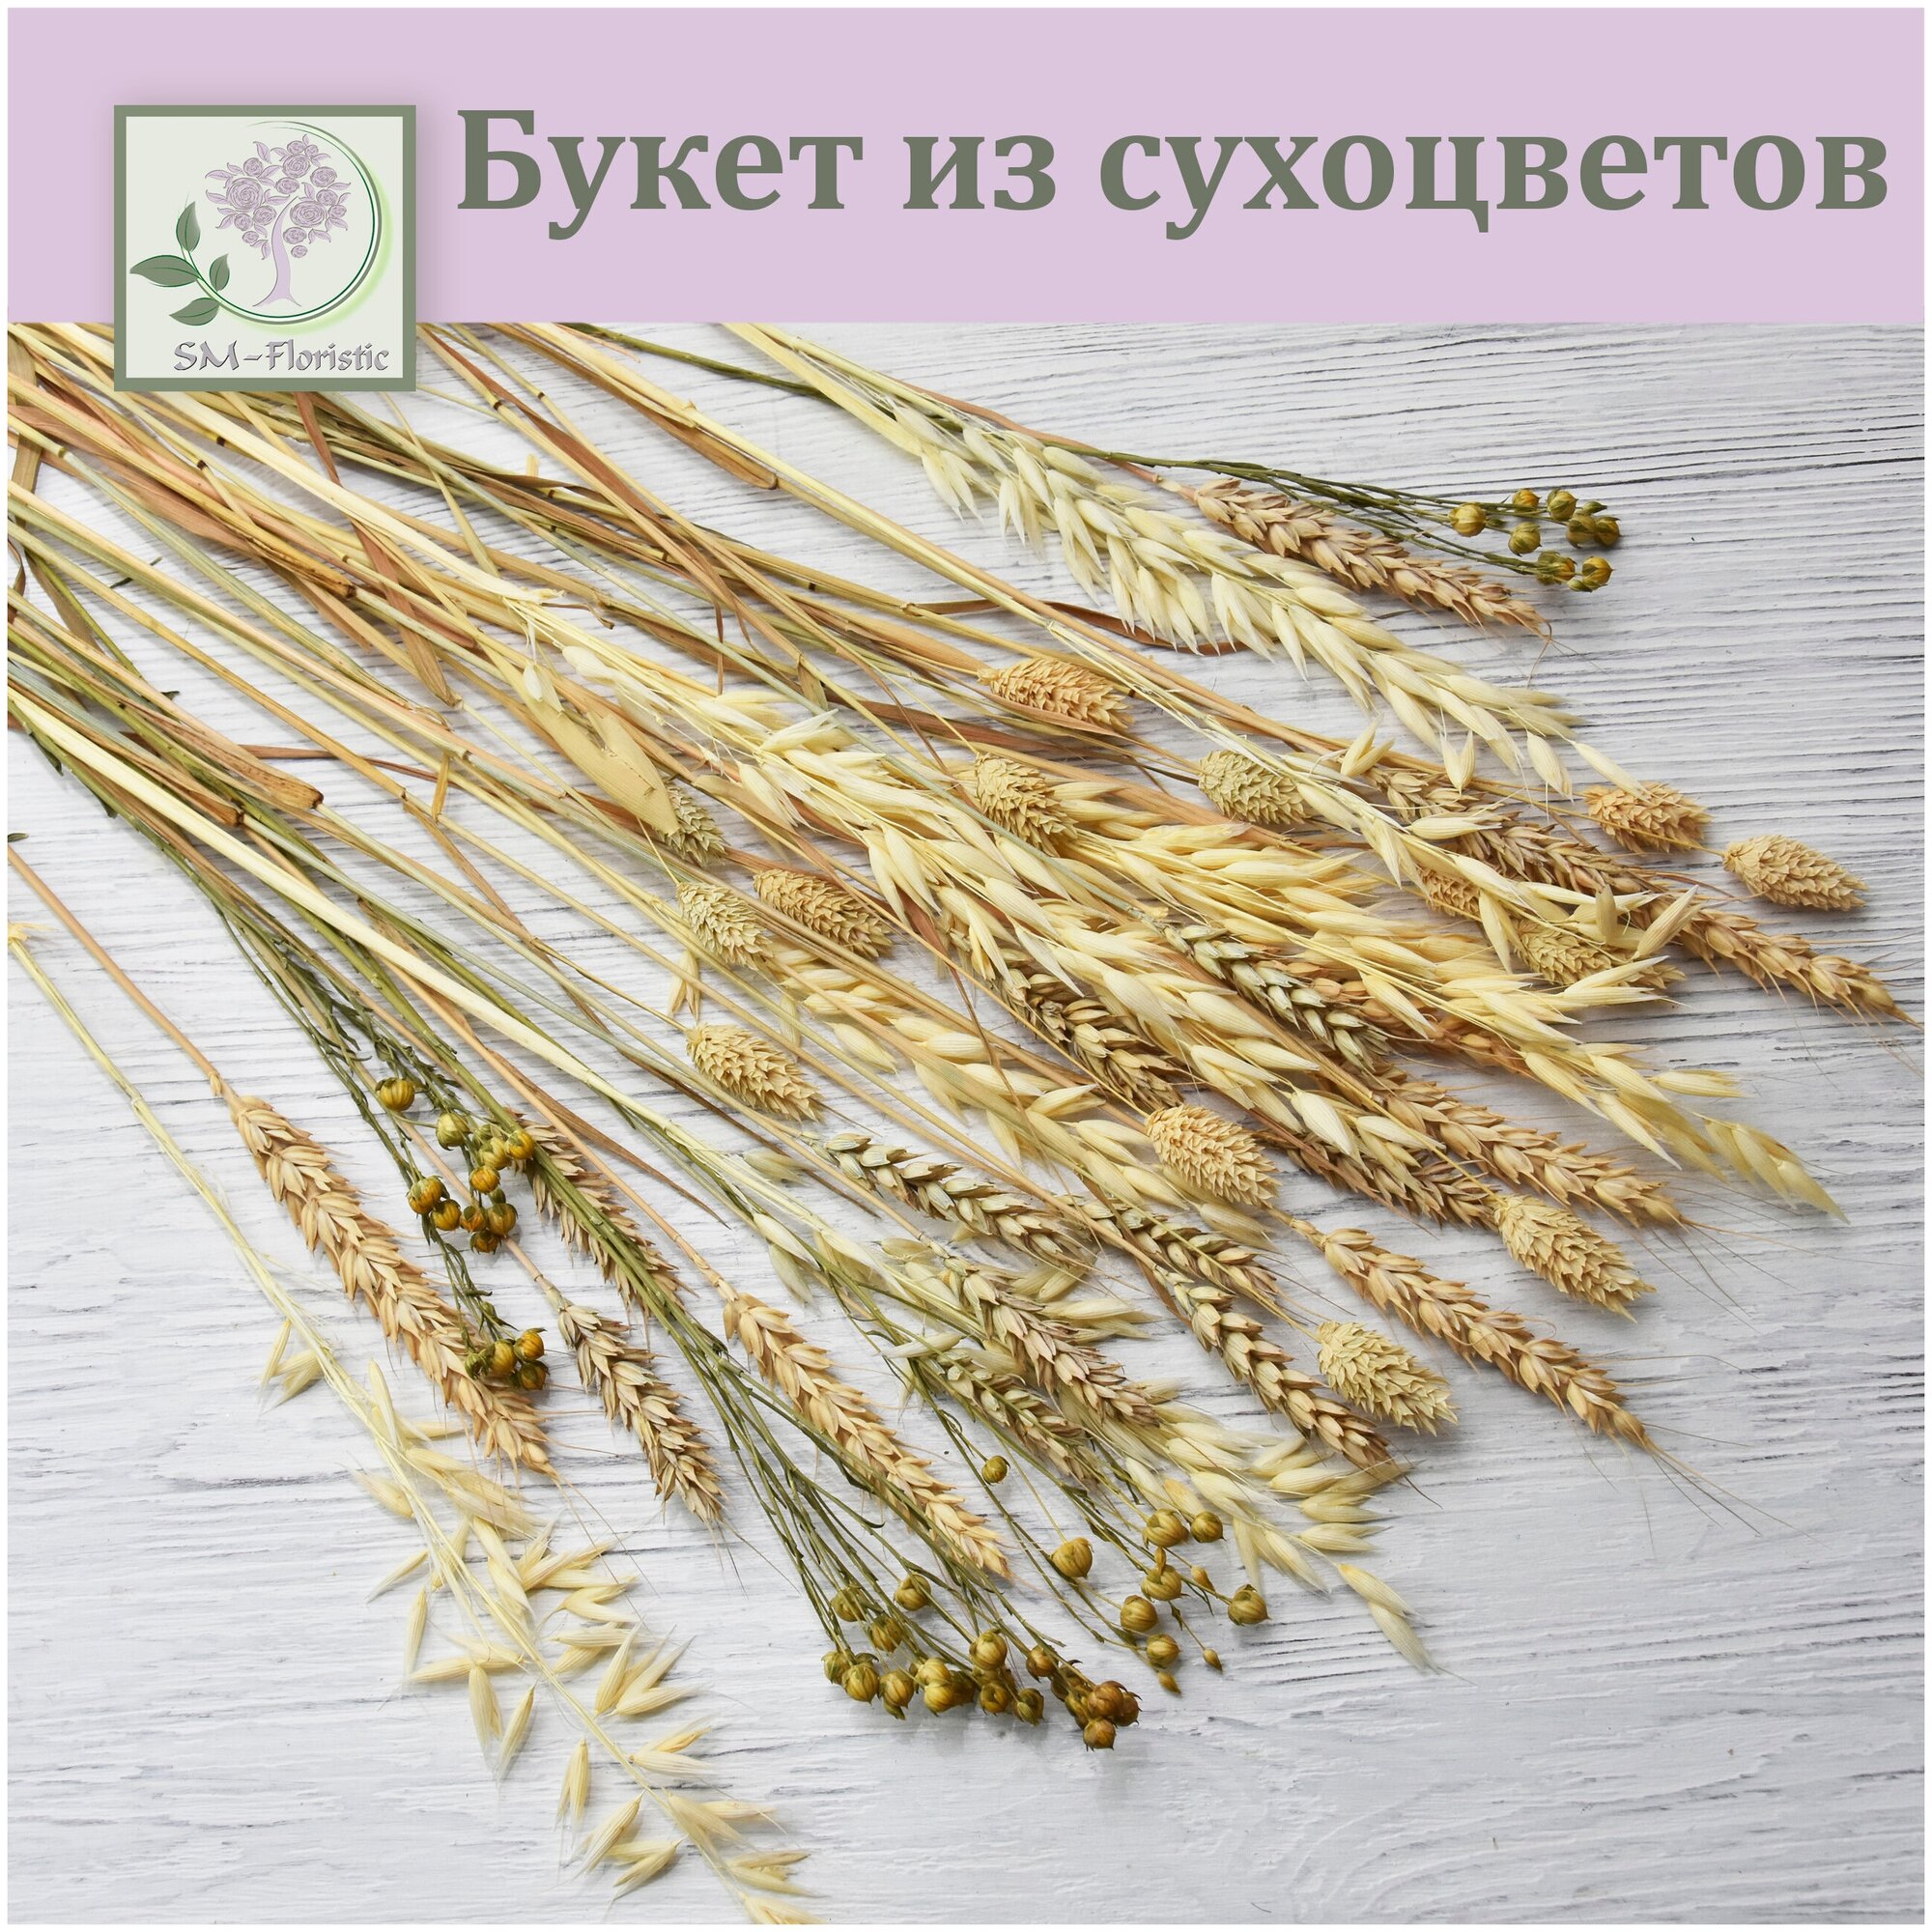 Букет из сухоцветов / Пшеница Овес Лен Фаларис / Букет для интерьера сухоцветы для декора